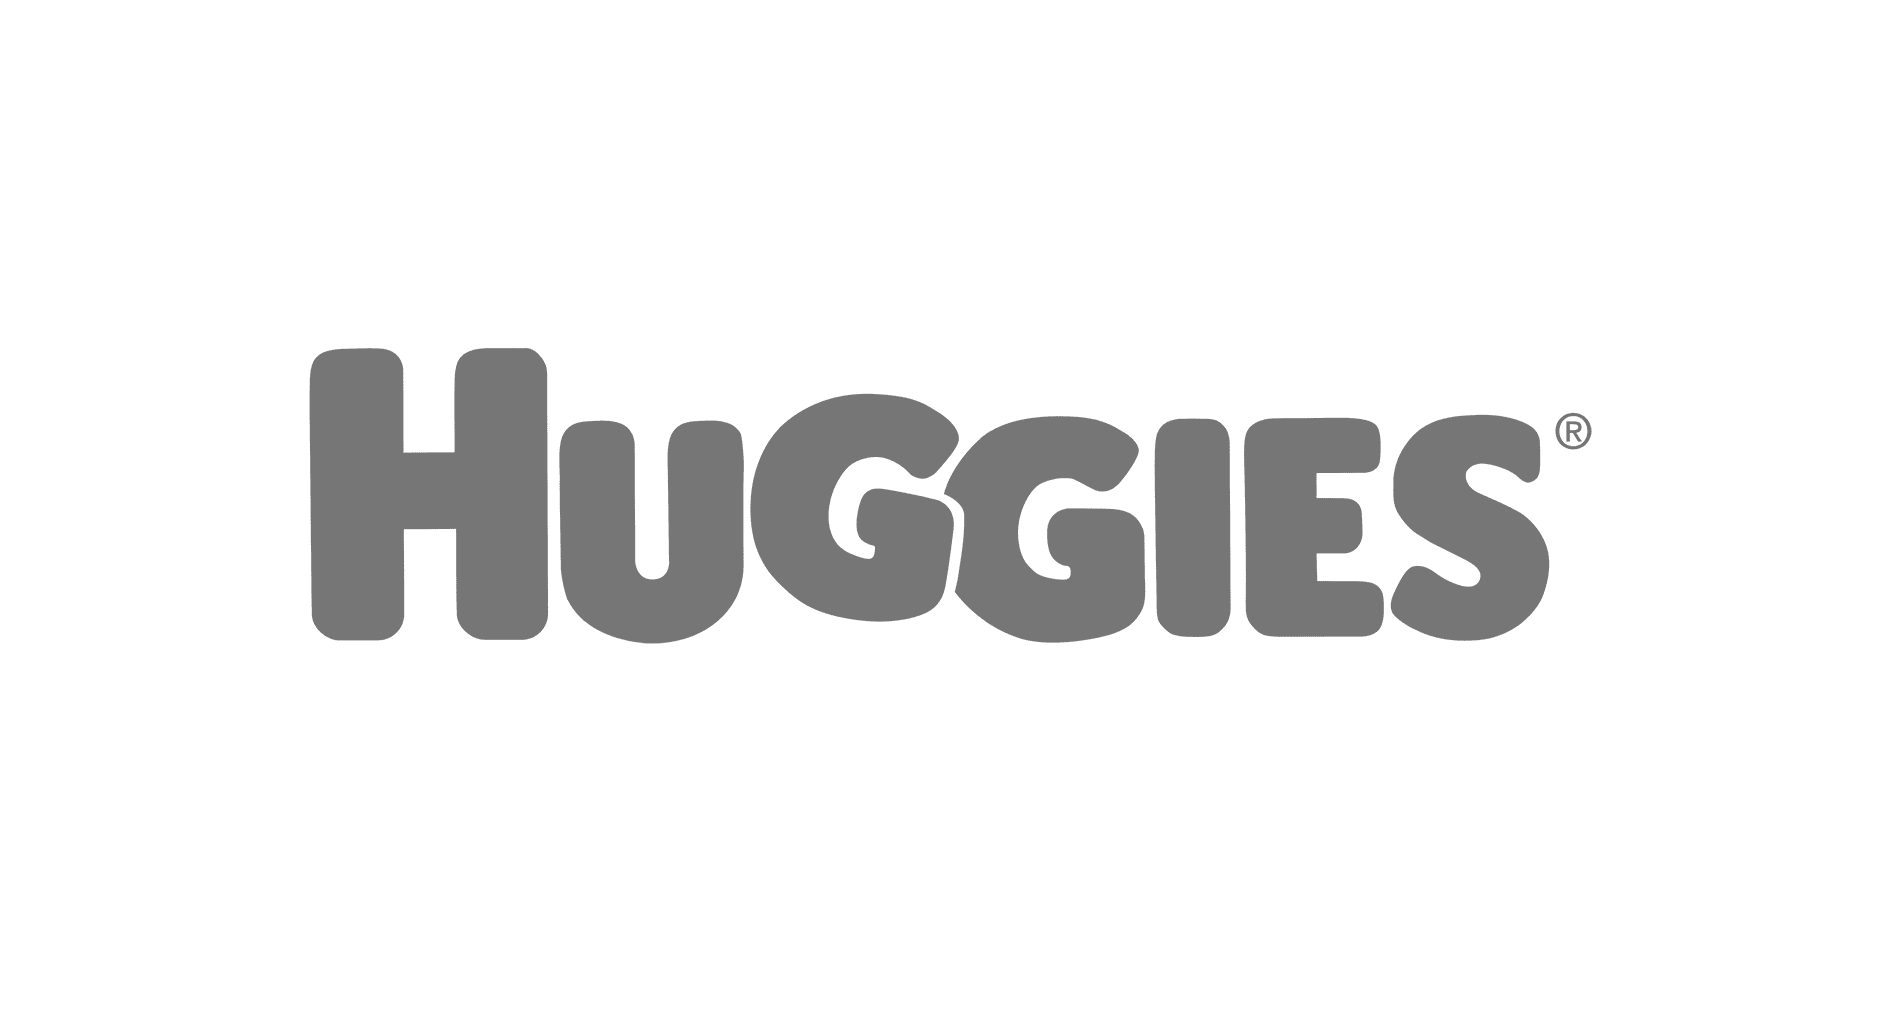 logotipo huggies